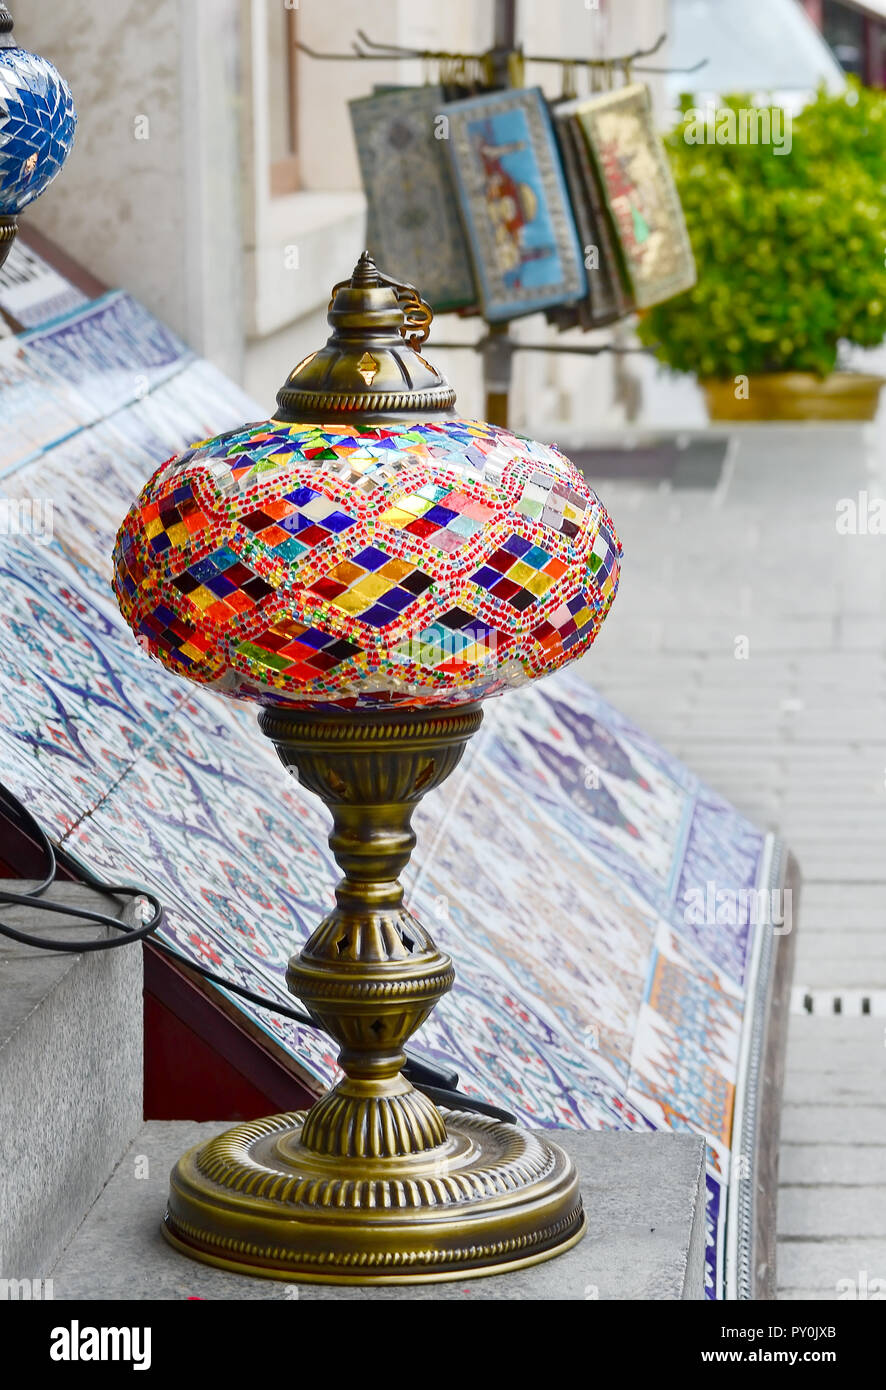 Artesanal de vidrio coloreado tradicional turco lanten. Estambul. Foto de stock